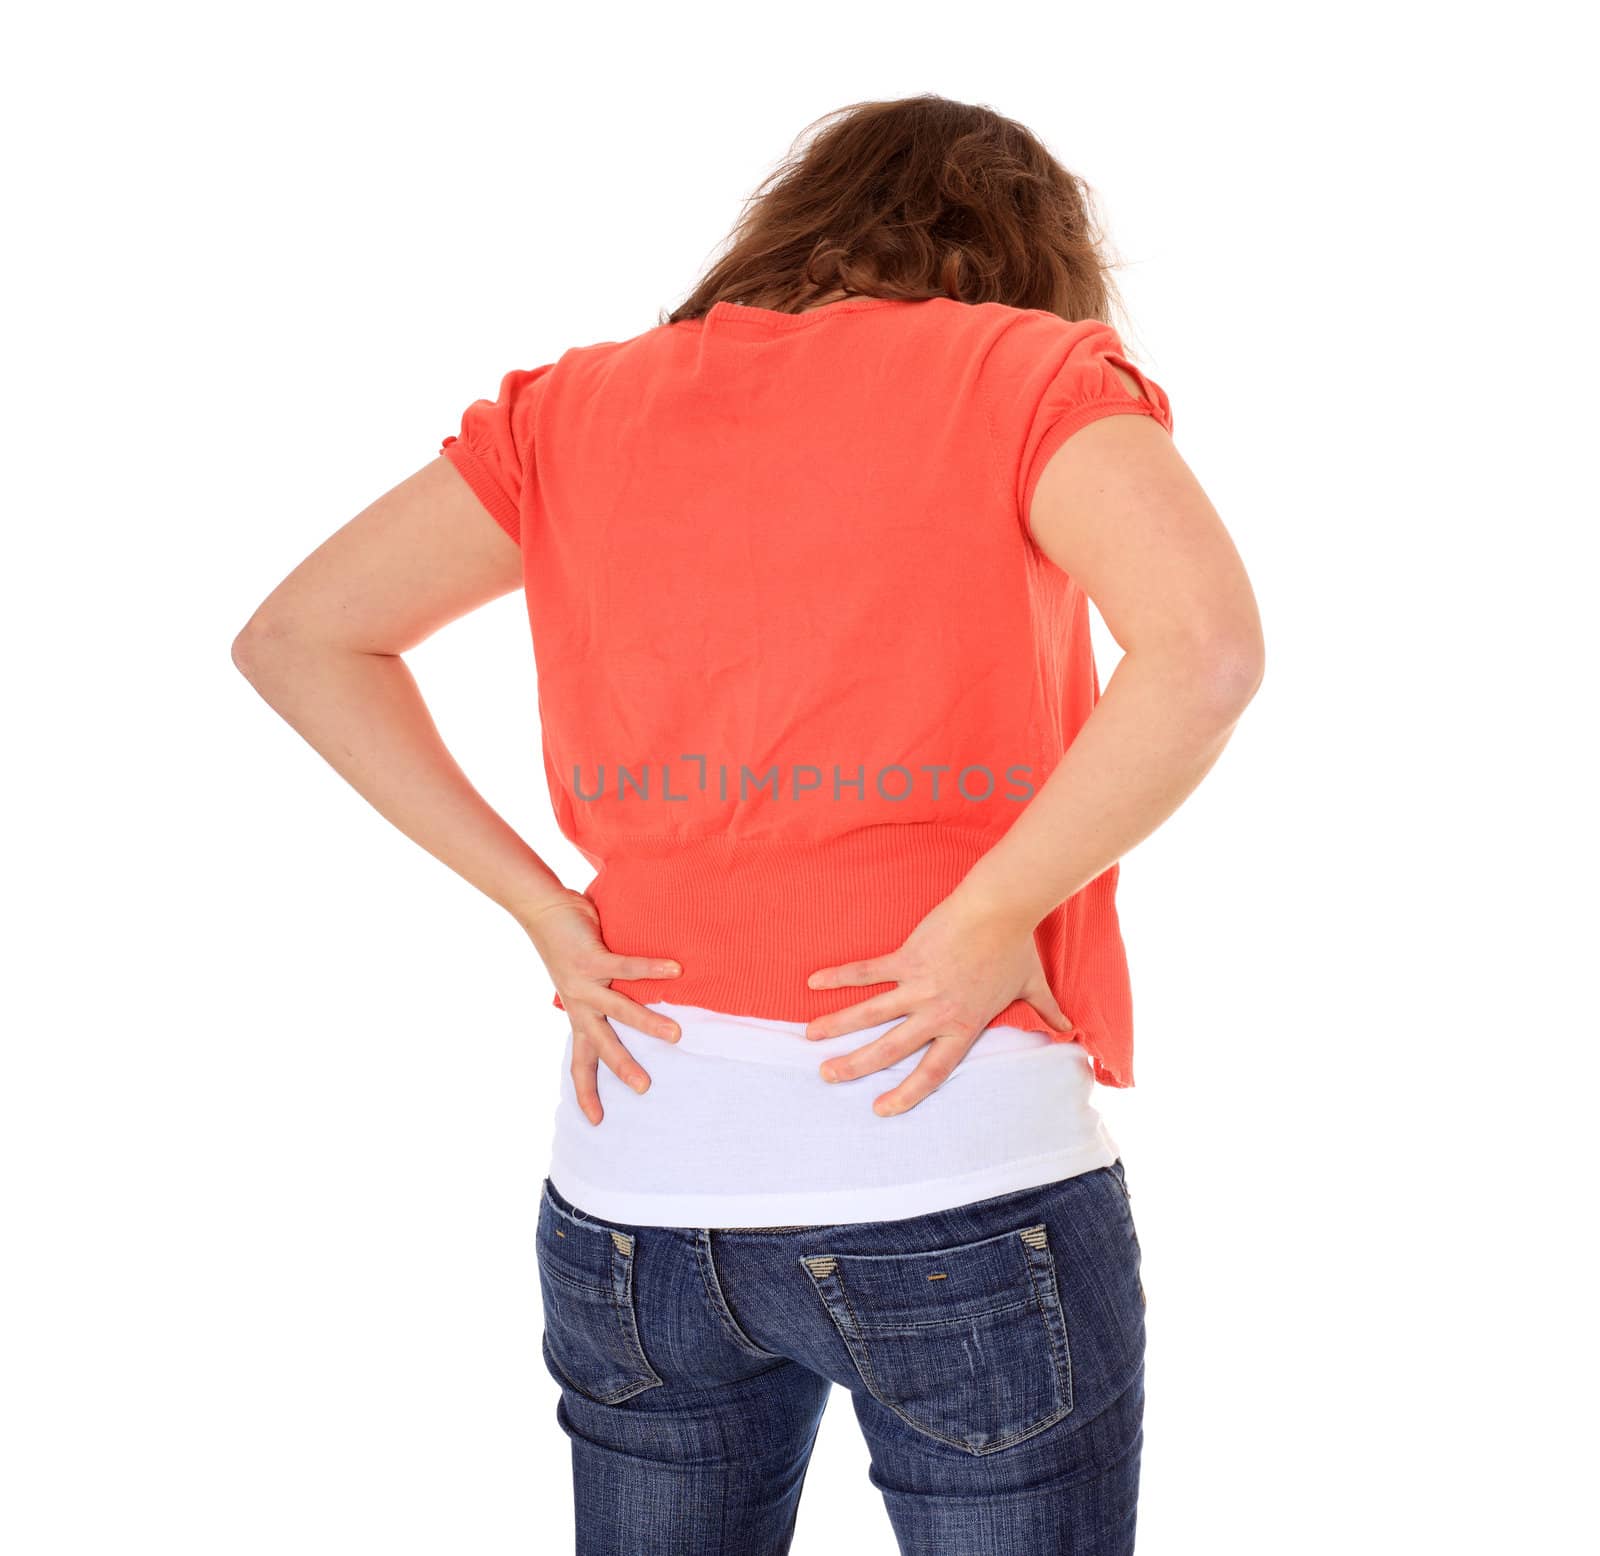 Back pain by kaarsten